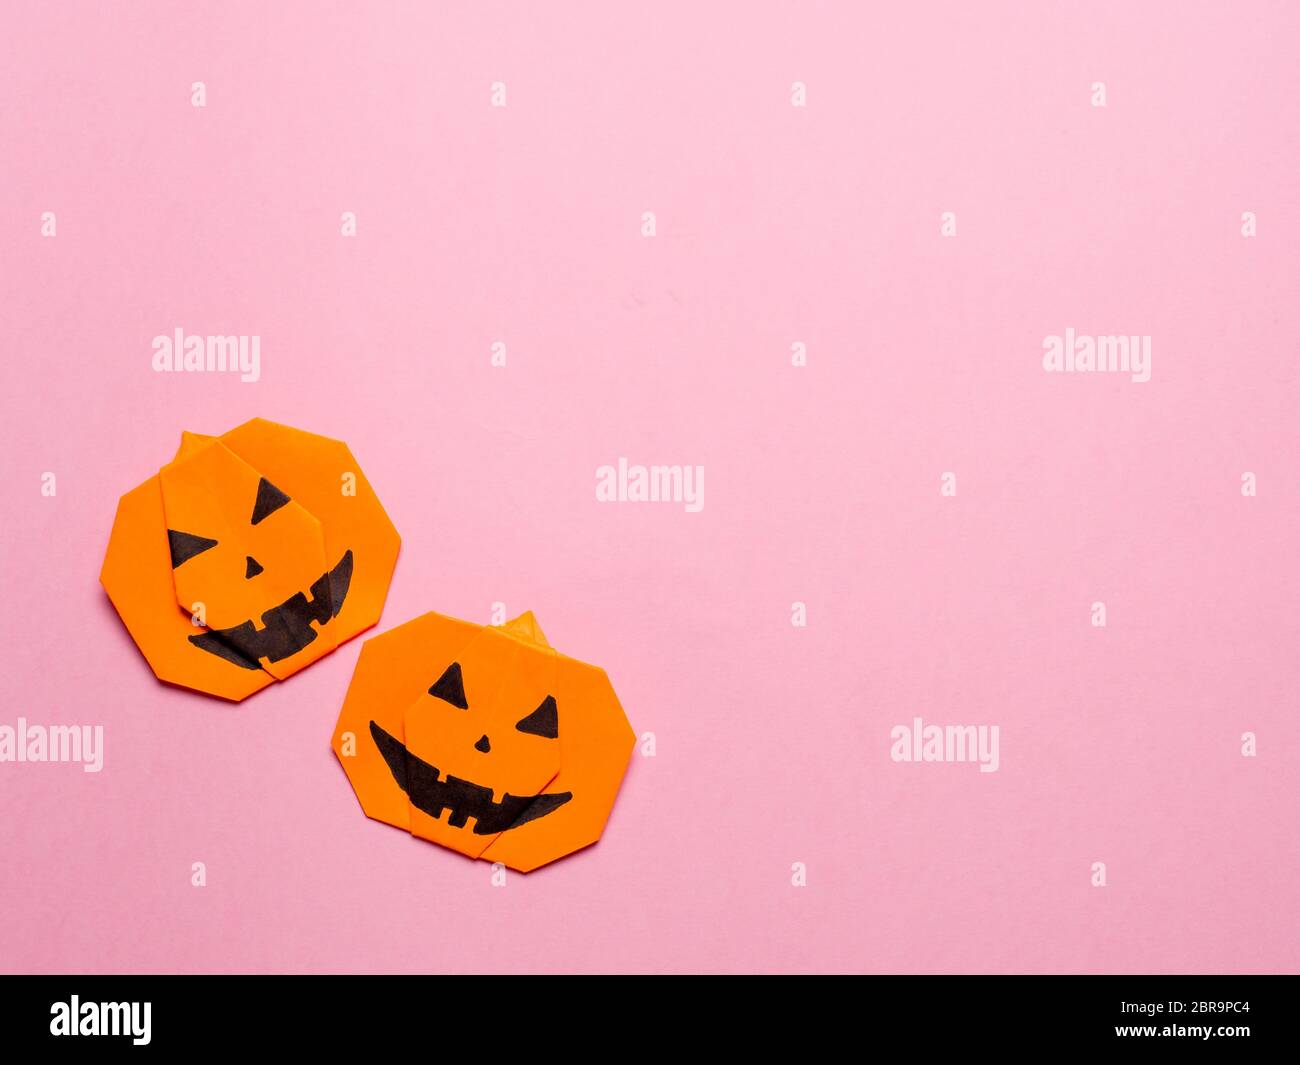 Concepto de Halloween. Calabaza de origami de papel sobre fondo rosa. Idea  simple para halloween - fácil de hacer calabazas de papel en el color de  moda Ceilán amarillo backgr Fotografía de